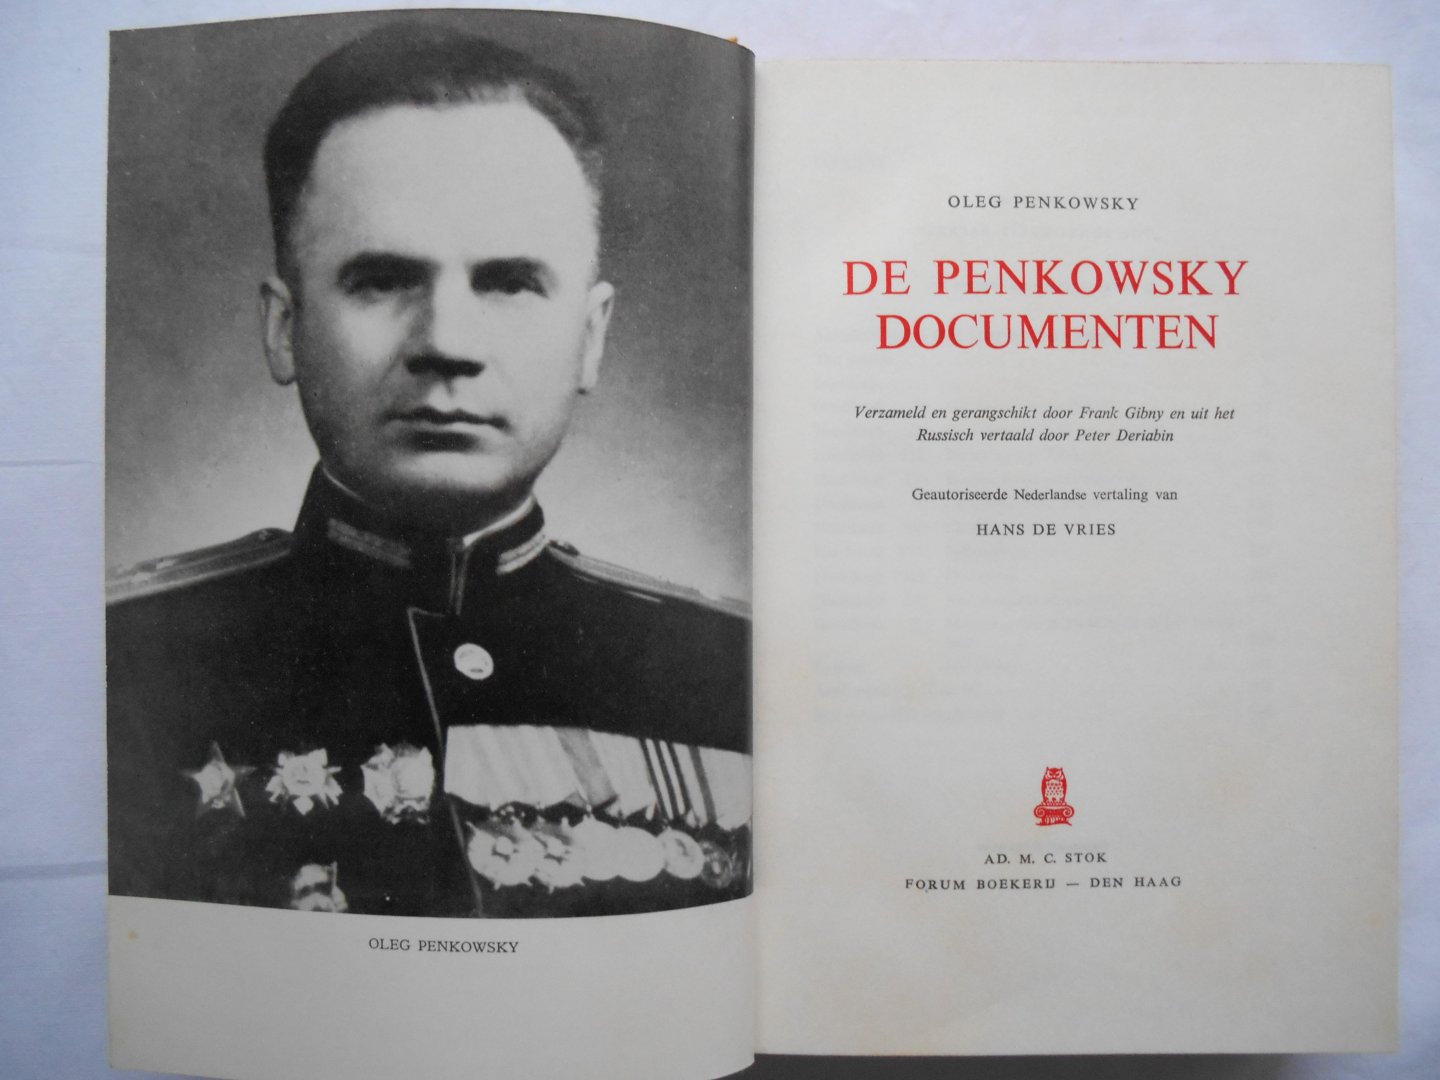 Penkowsky, Oleg - vertaling Hans de Vries - De Penkowsky documenten.